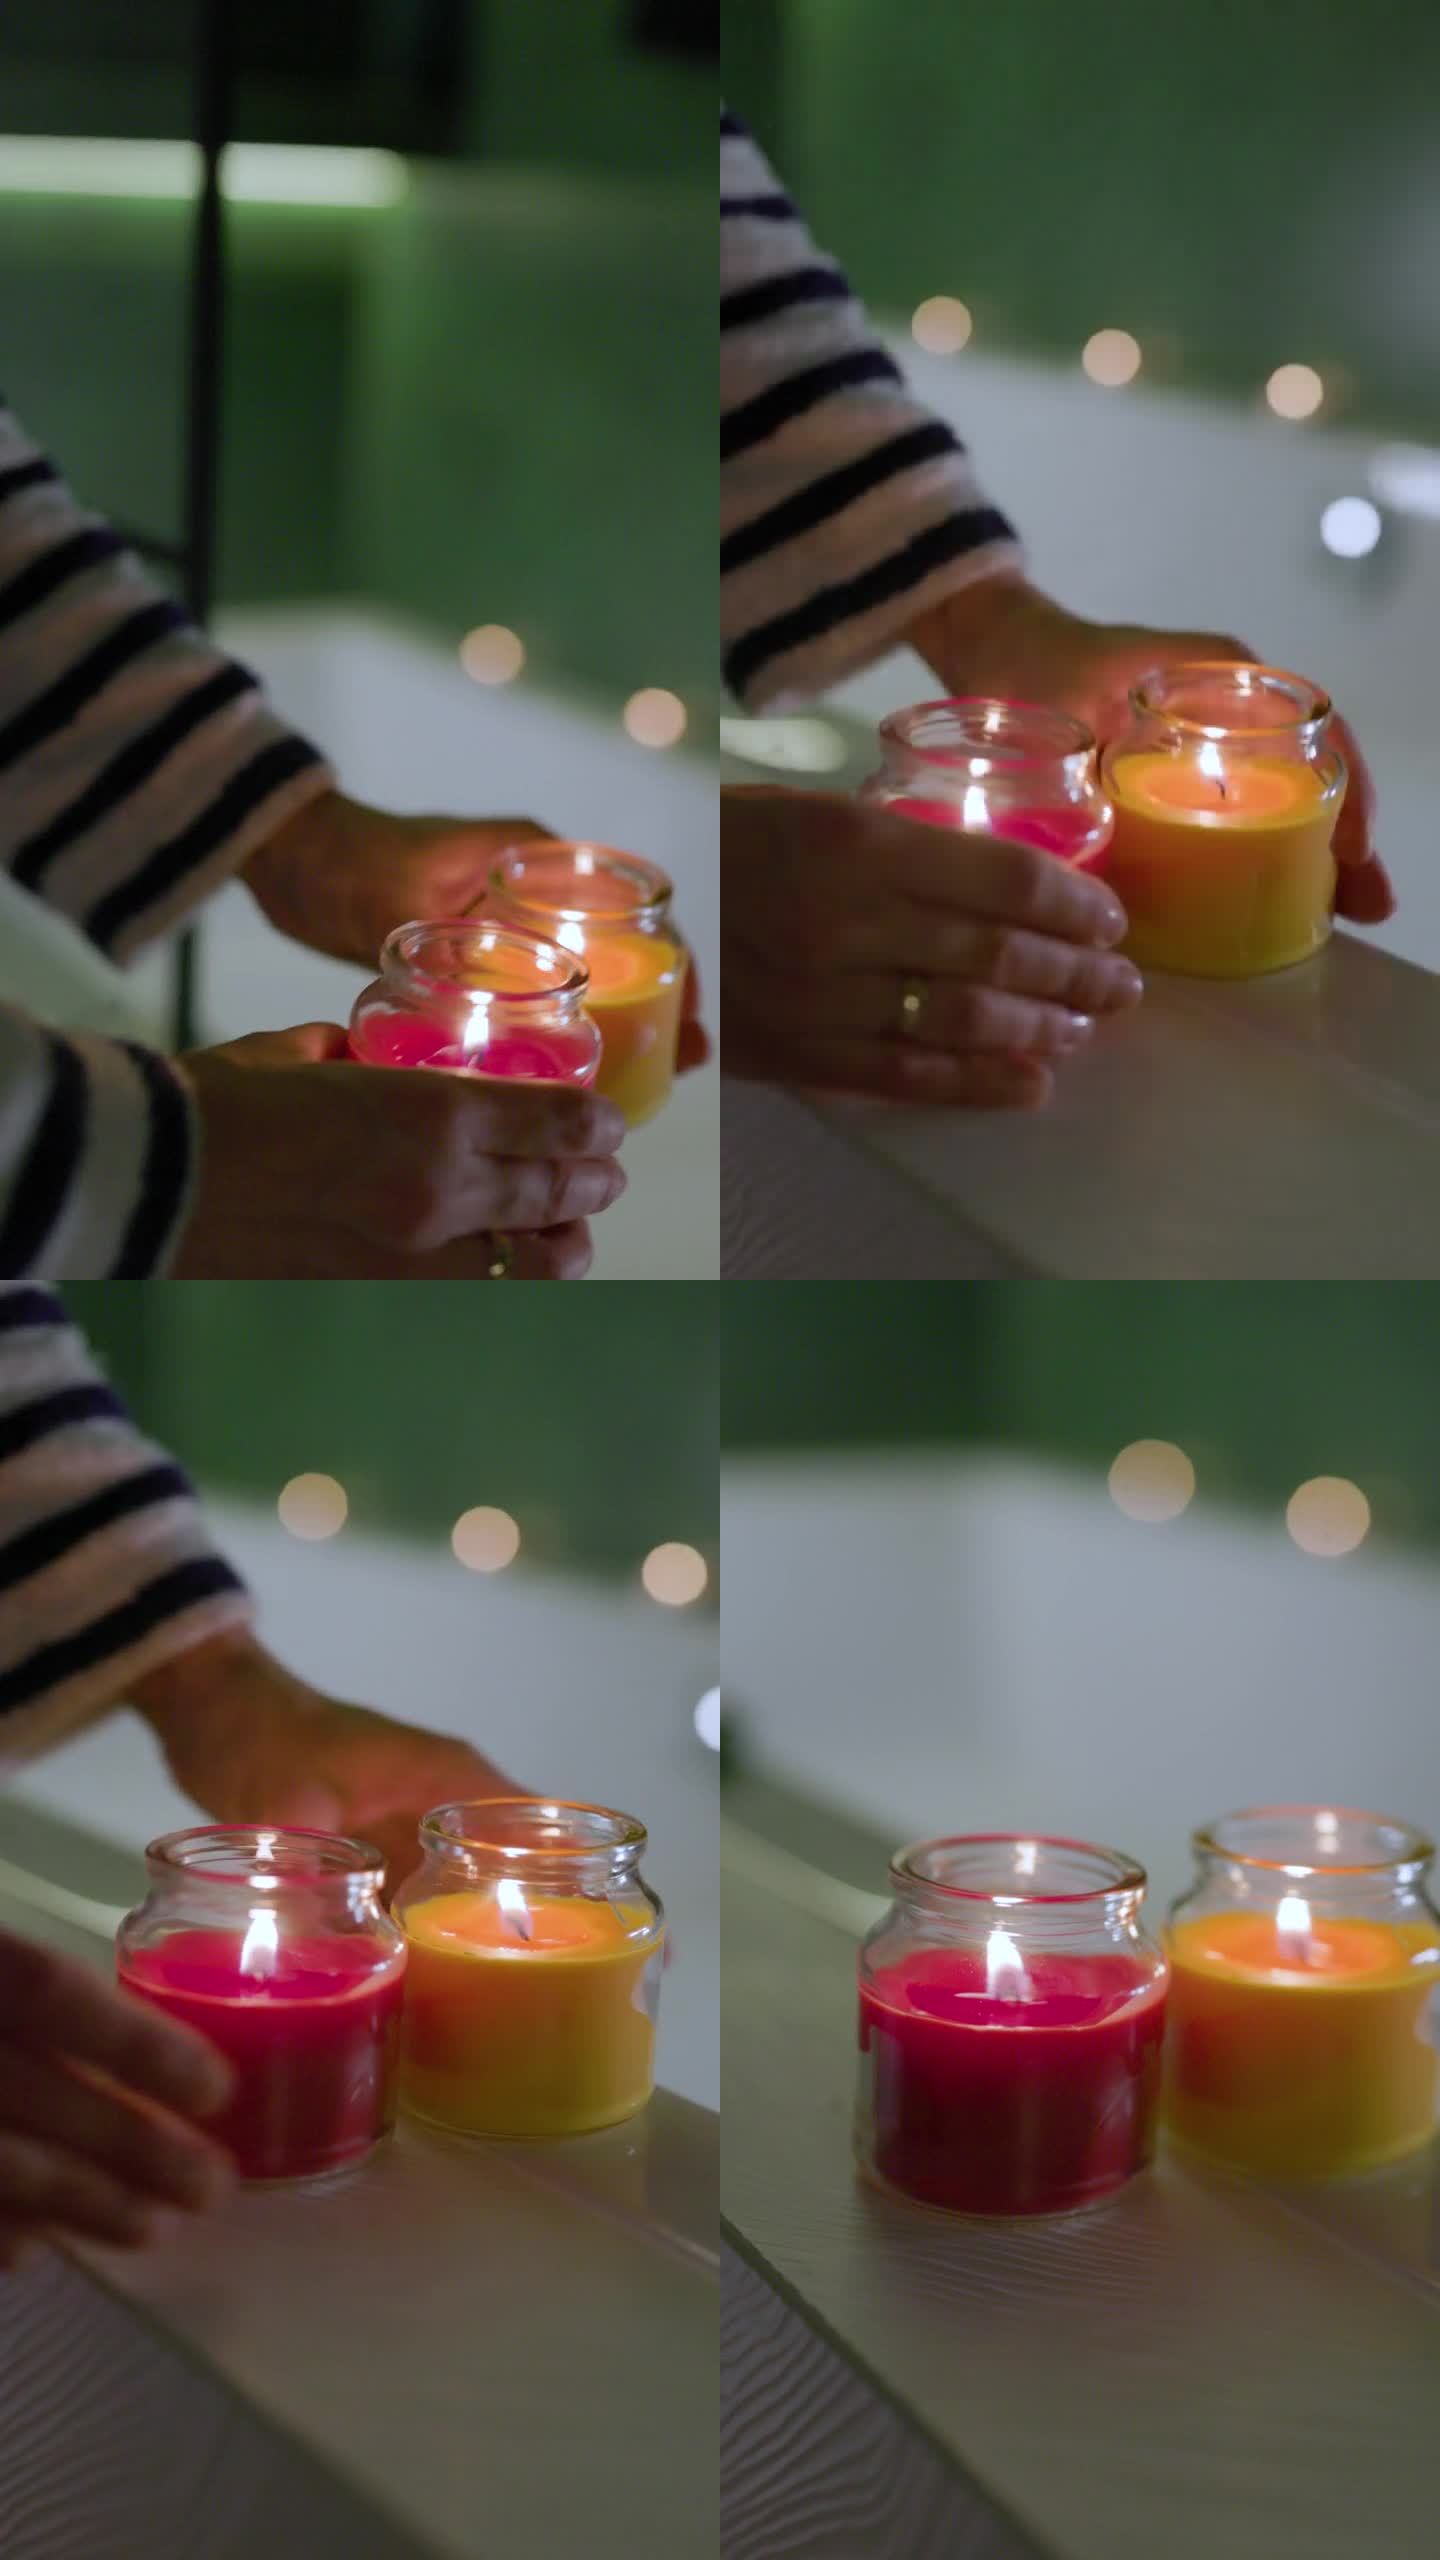 女人在浴缸边上放了两支香薰蜡烛